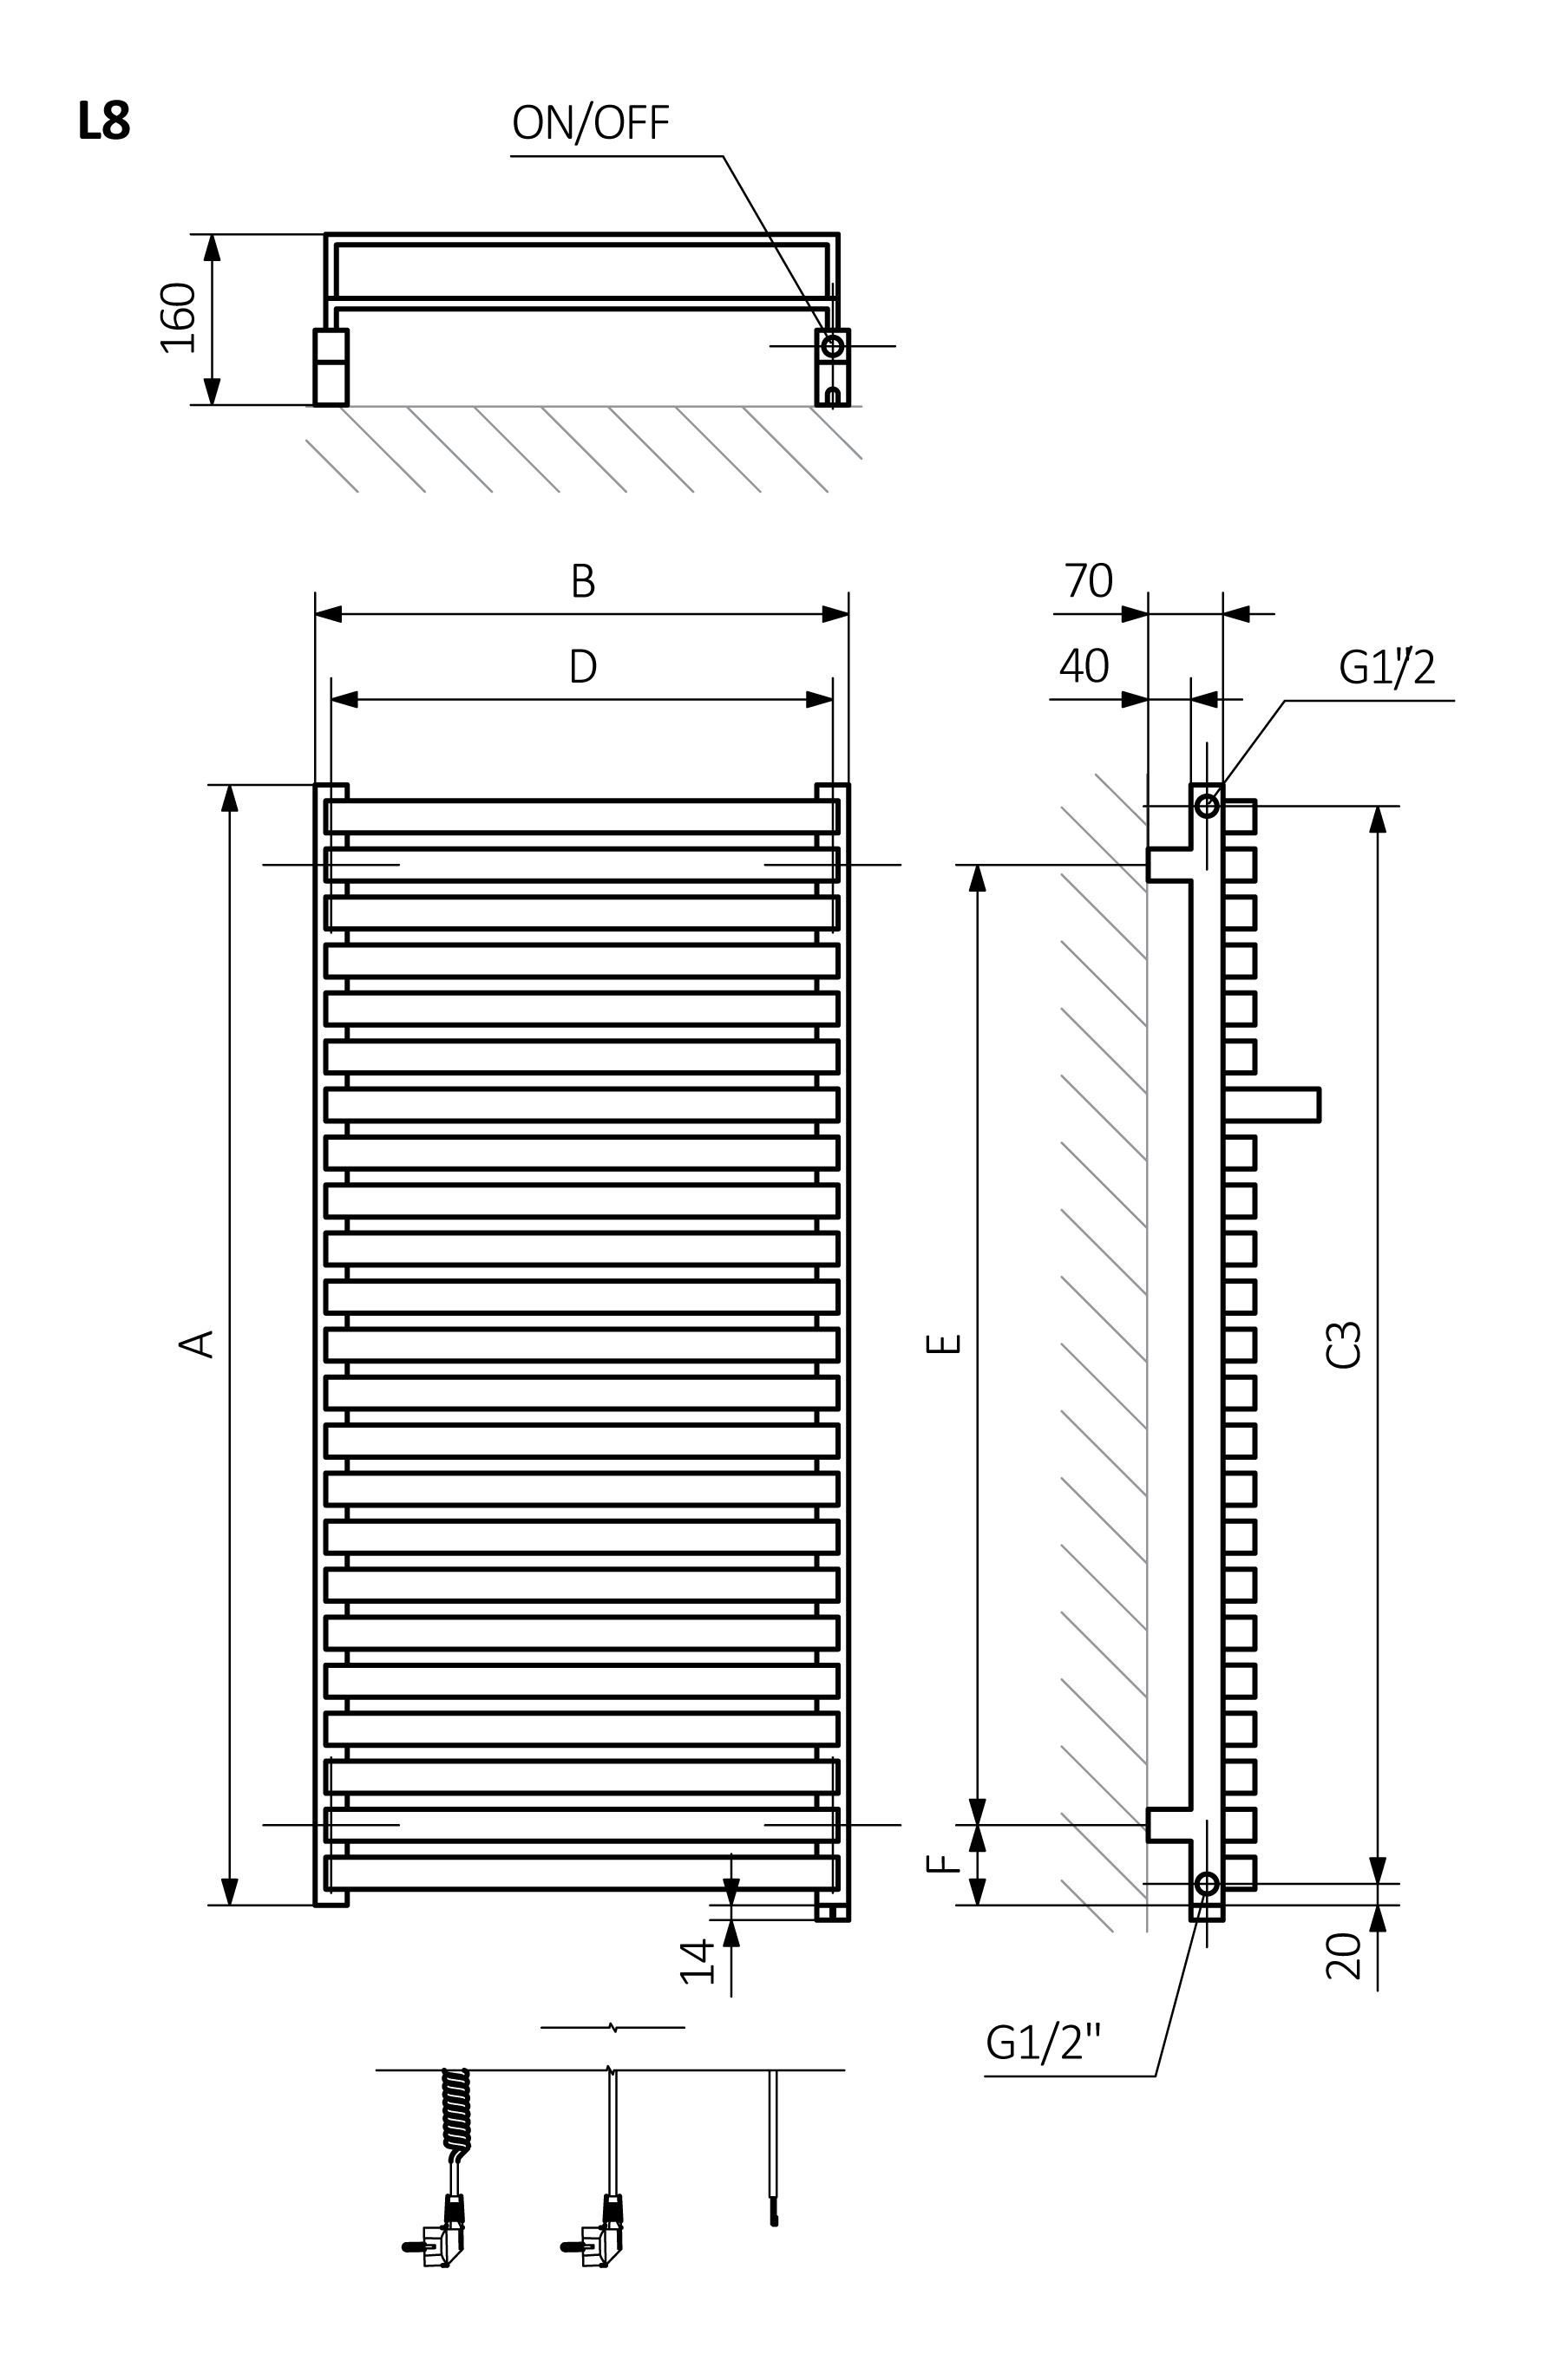 A - Výška B - Šířka C1-C5 - Vzdálenost mezi přípojkami D - Vzdálenost mezi držáky ve vodorovném směru E - Vzdálenost vertikálních prvků ve svislé poloze F - Vzdálenost od spodní osy spojovacích prvků ke spodnímu okraji kolektoru